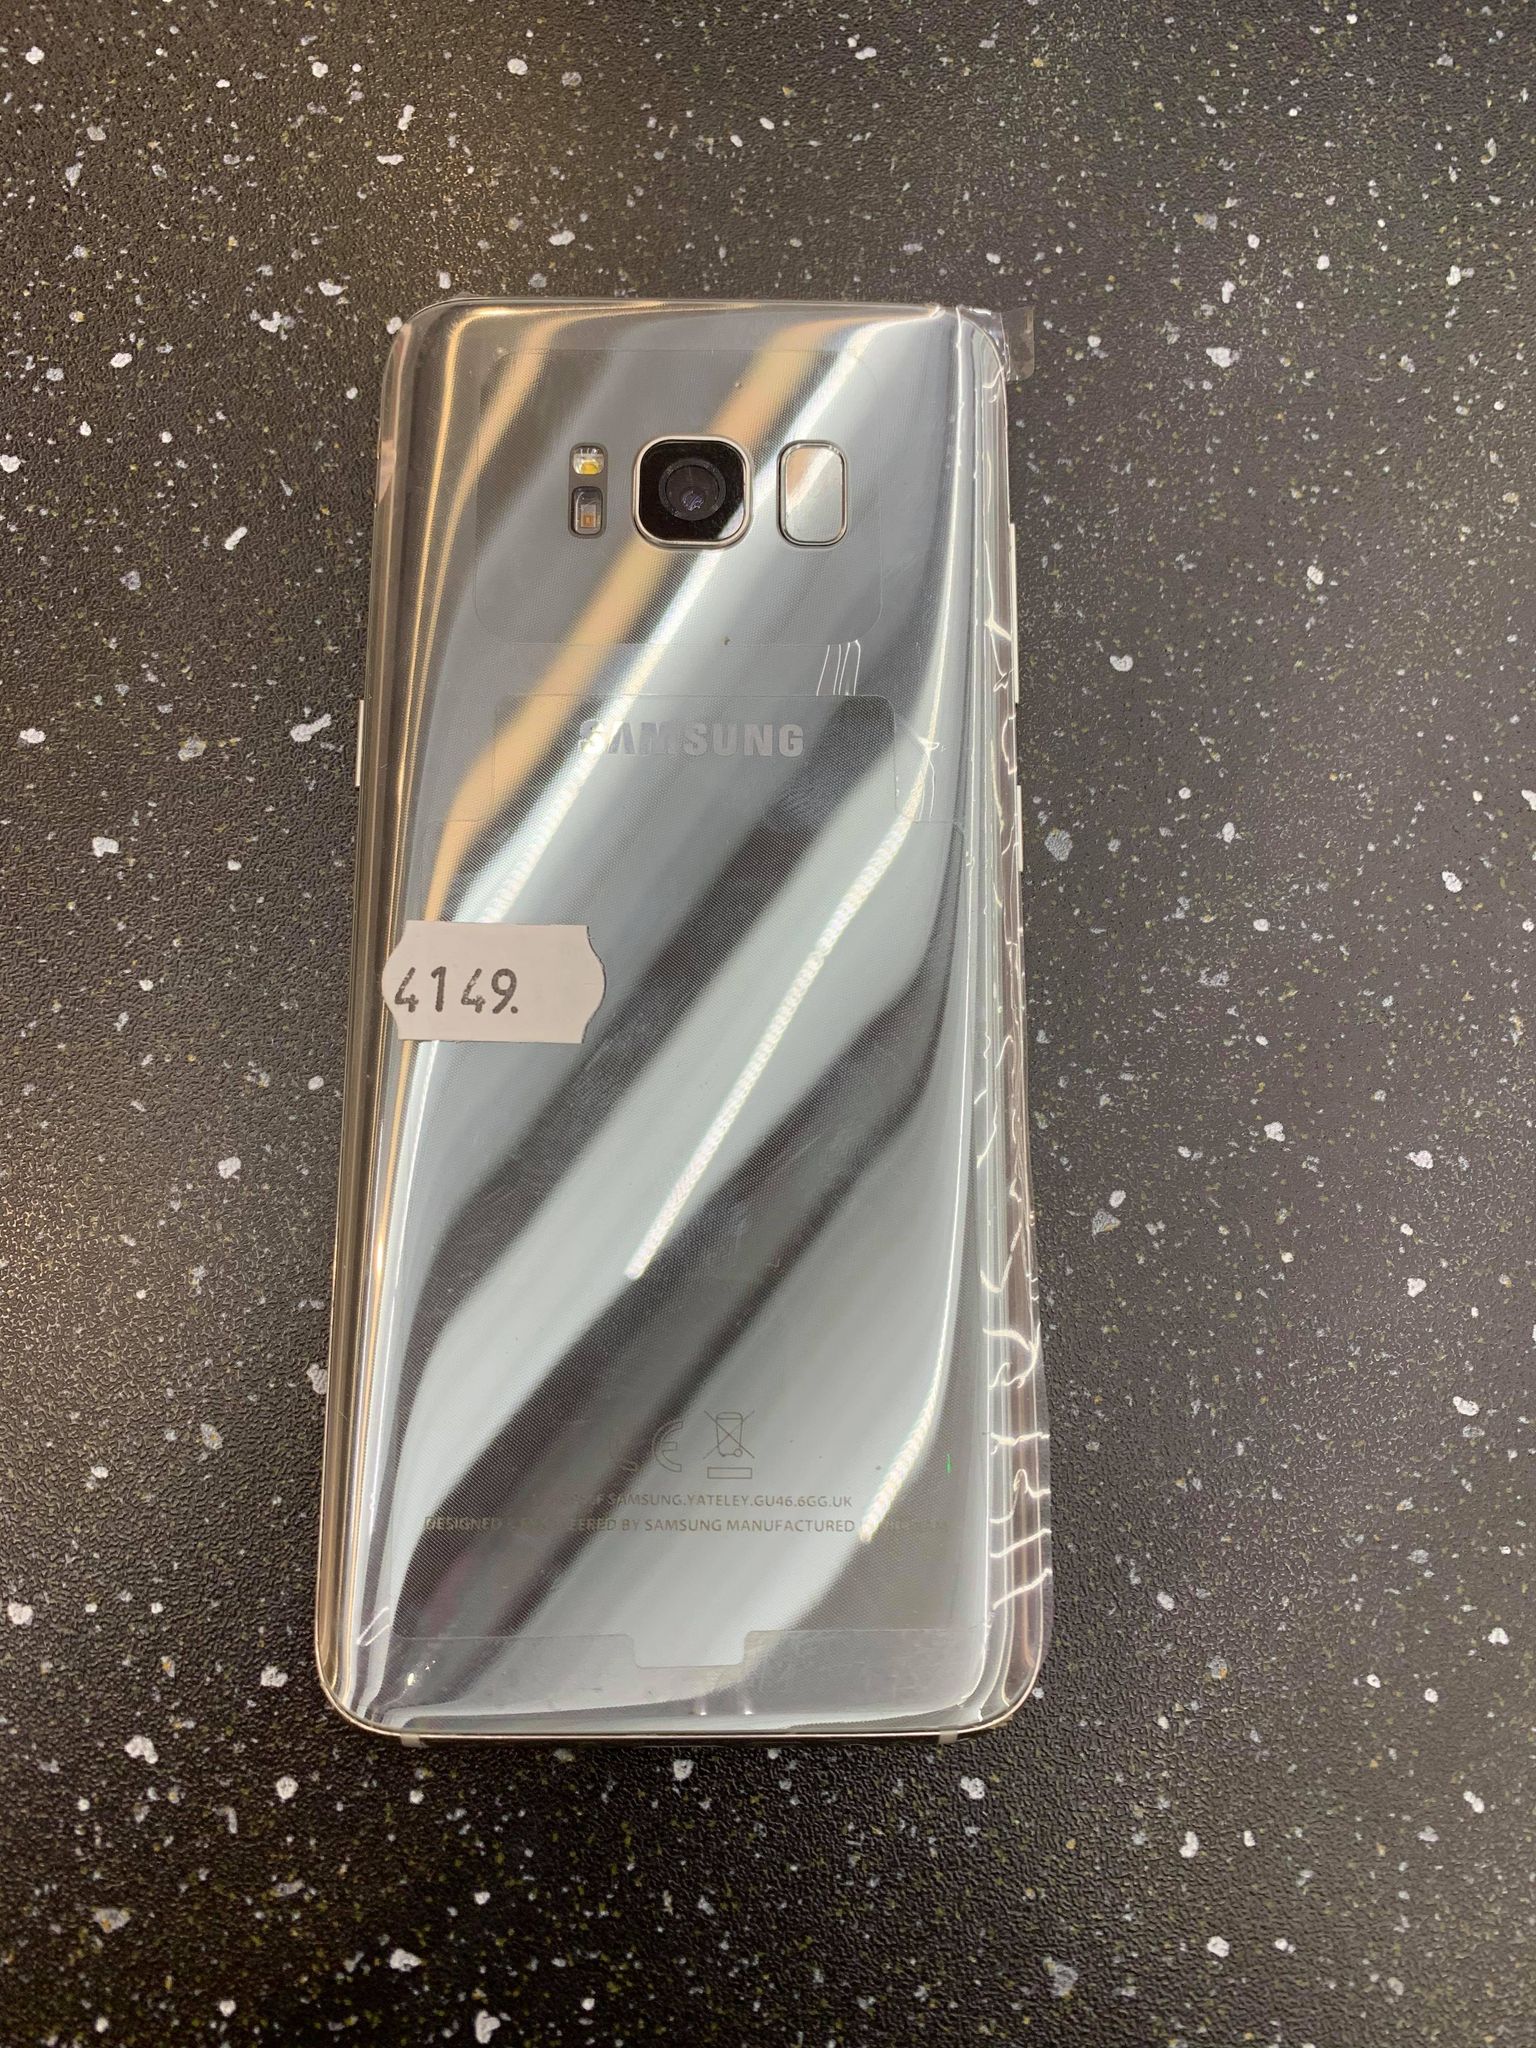 Samsung Galaxy S8 64gb Silver